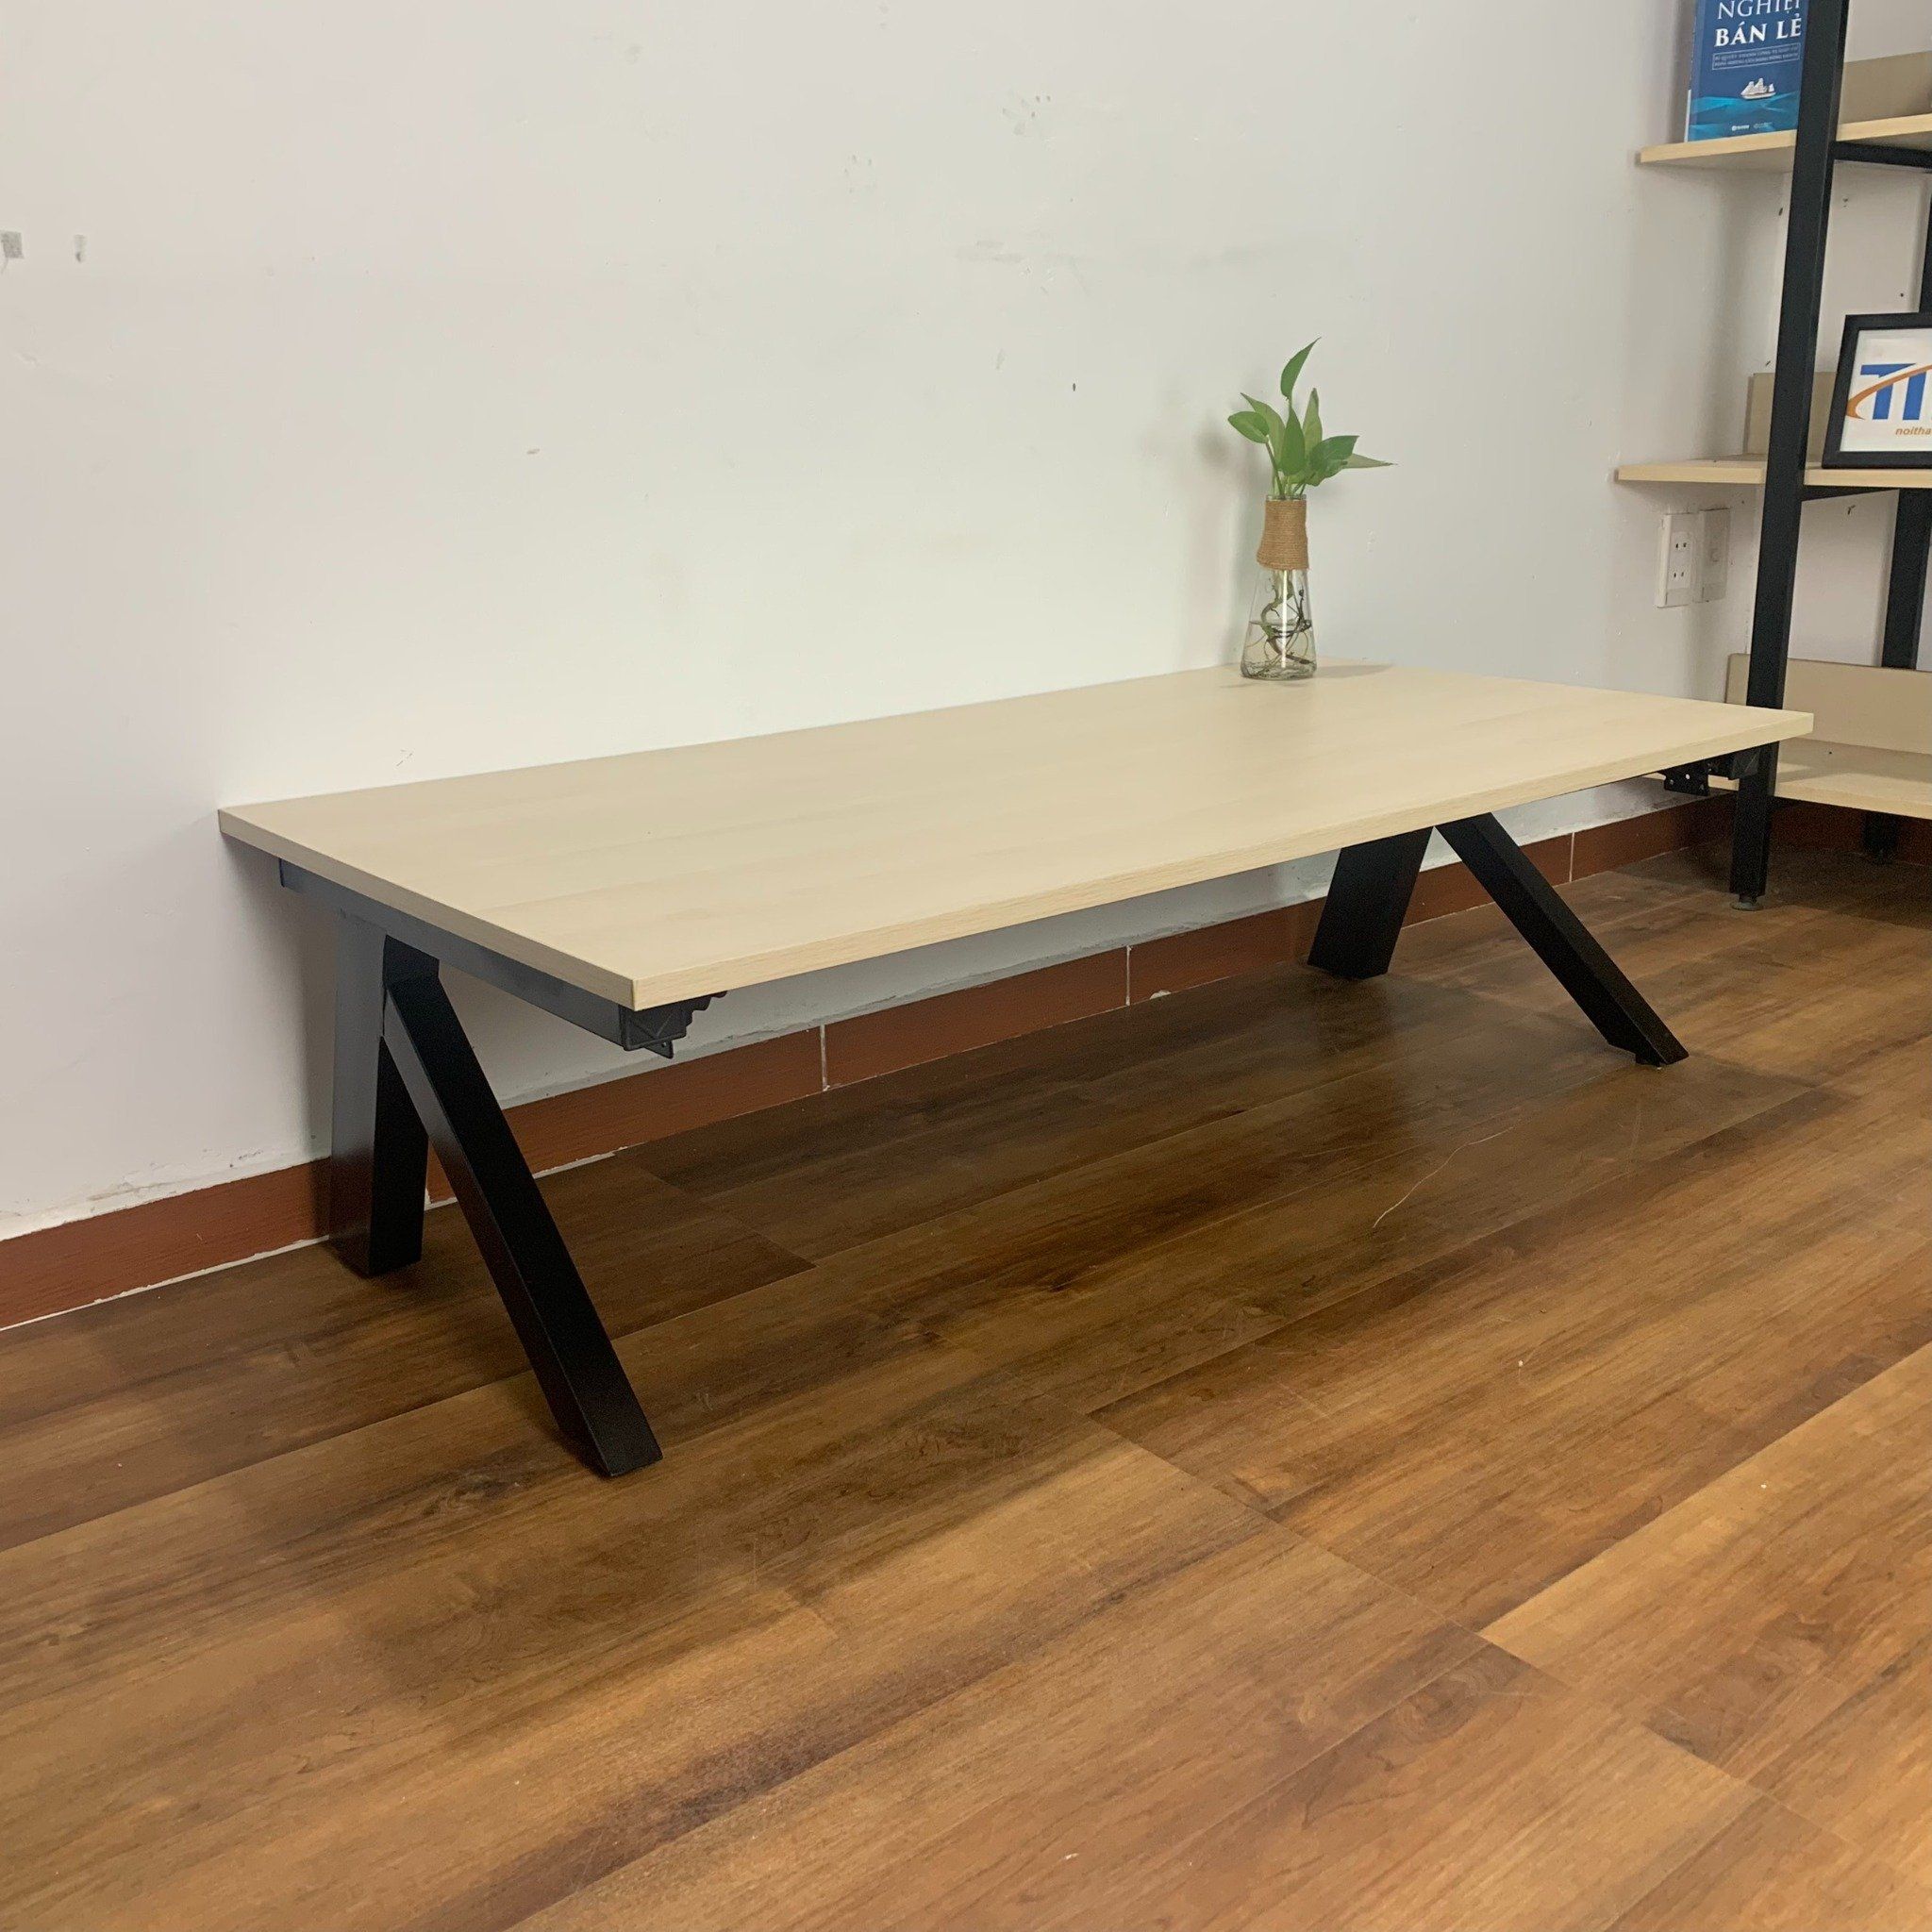  Mặt bàn làm việc - Mặt bàn gỗ - Mặt bàn gaming 